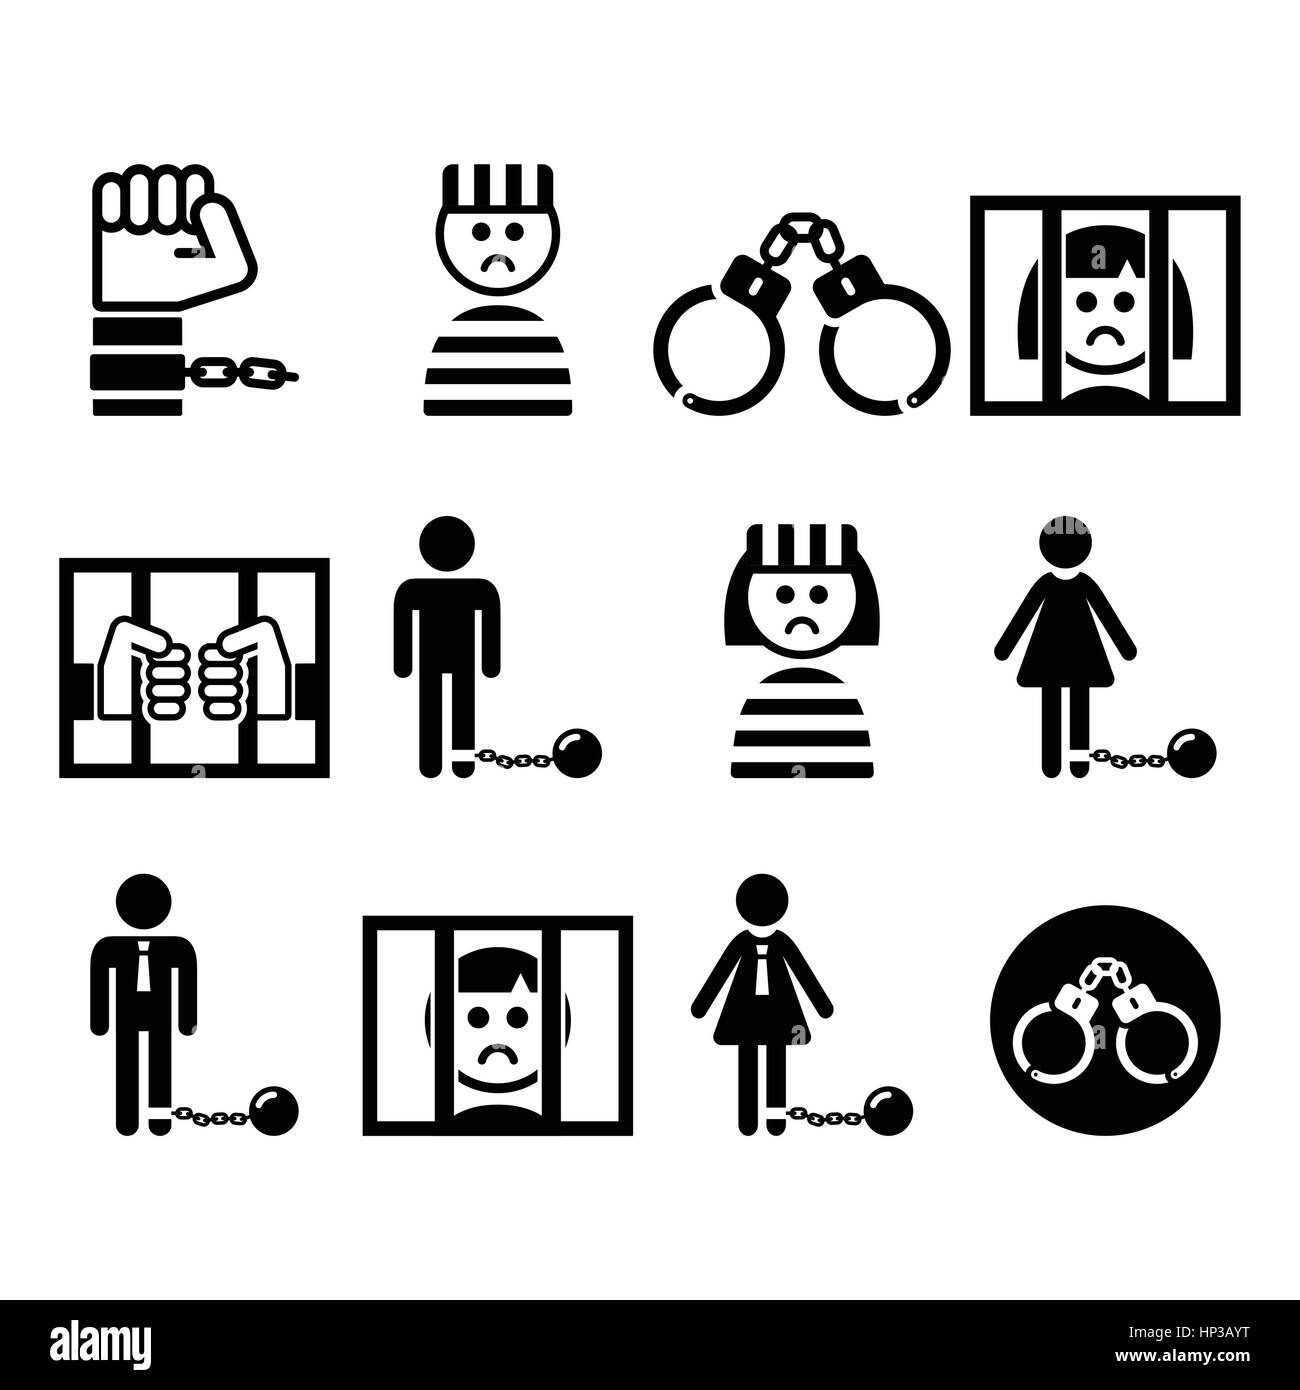 Prisonnier, le crime, l'esclavage vector icons set. Prison, prison black icons set isolated on white Illustration de Vecteur